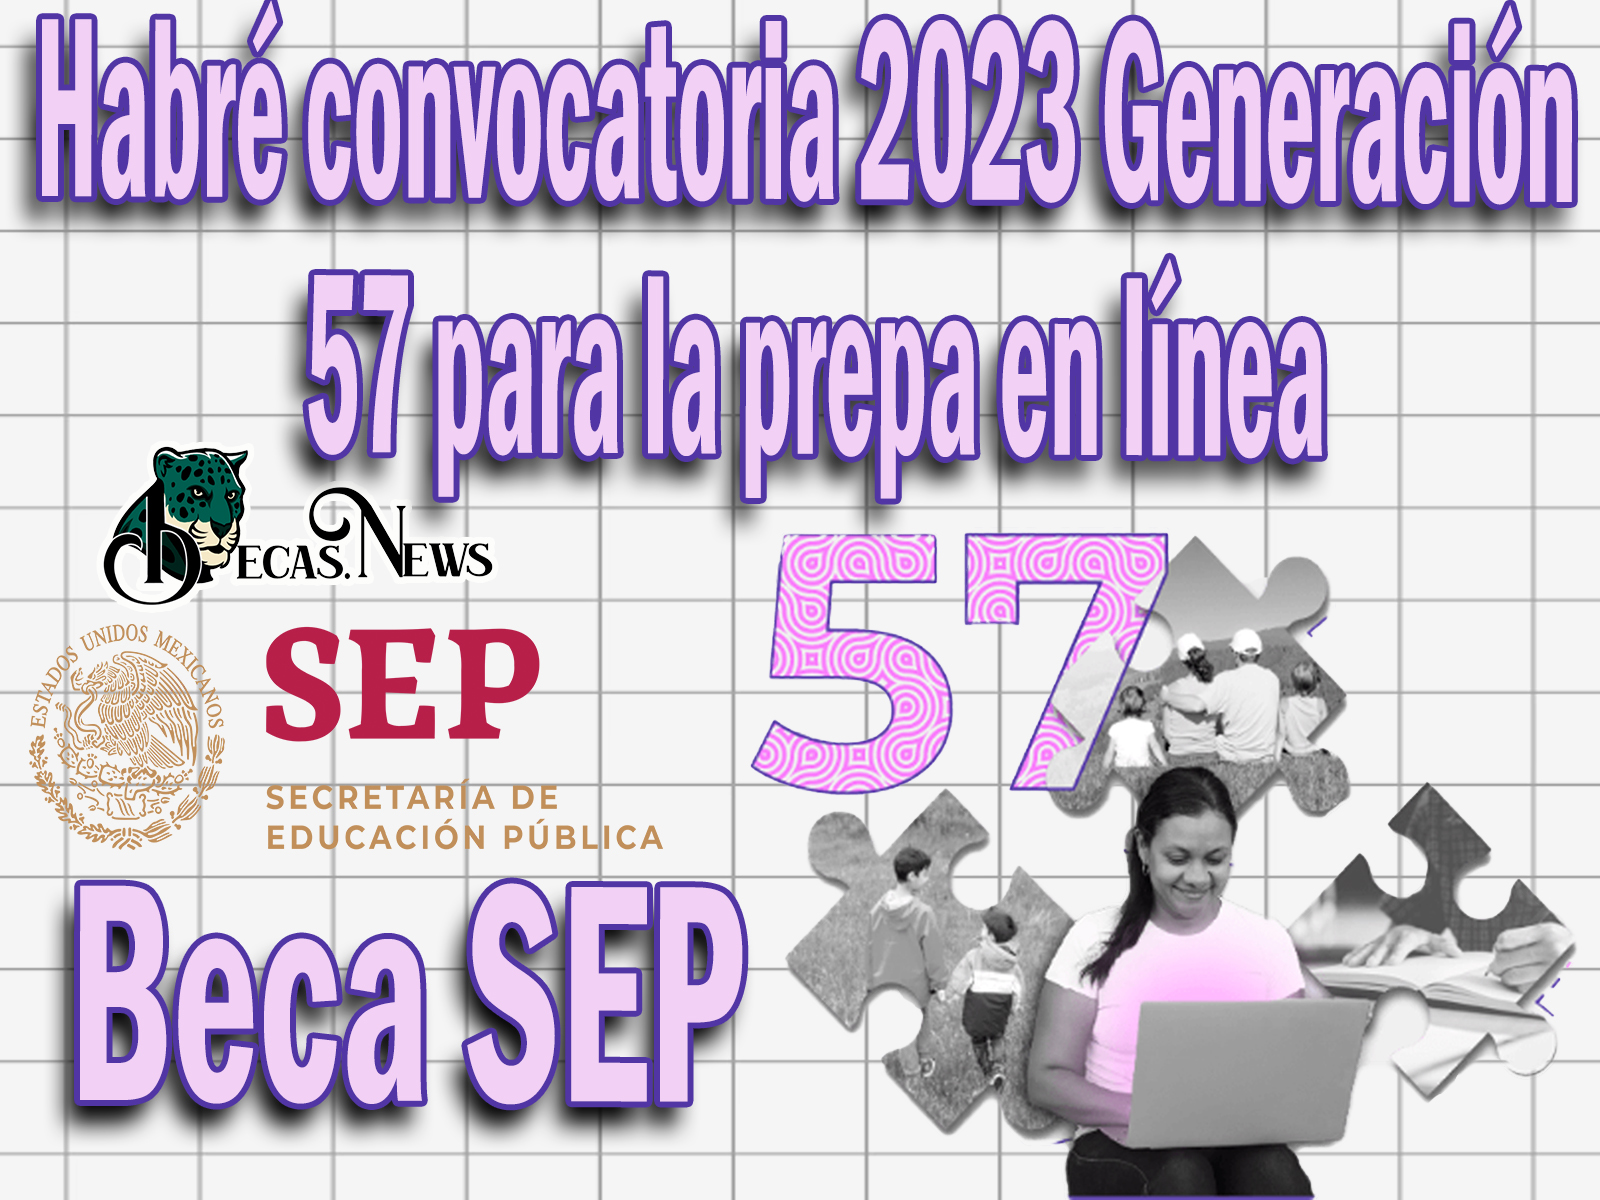 Beca SEP: Habré convocatoria 2023 Generación 57 para la prepa en línea